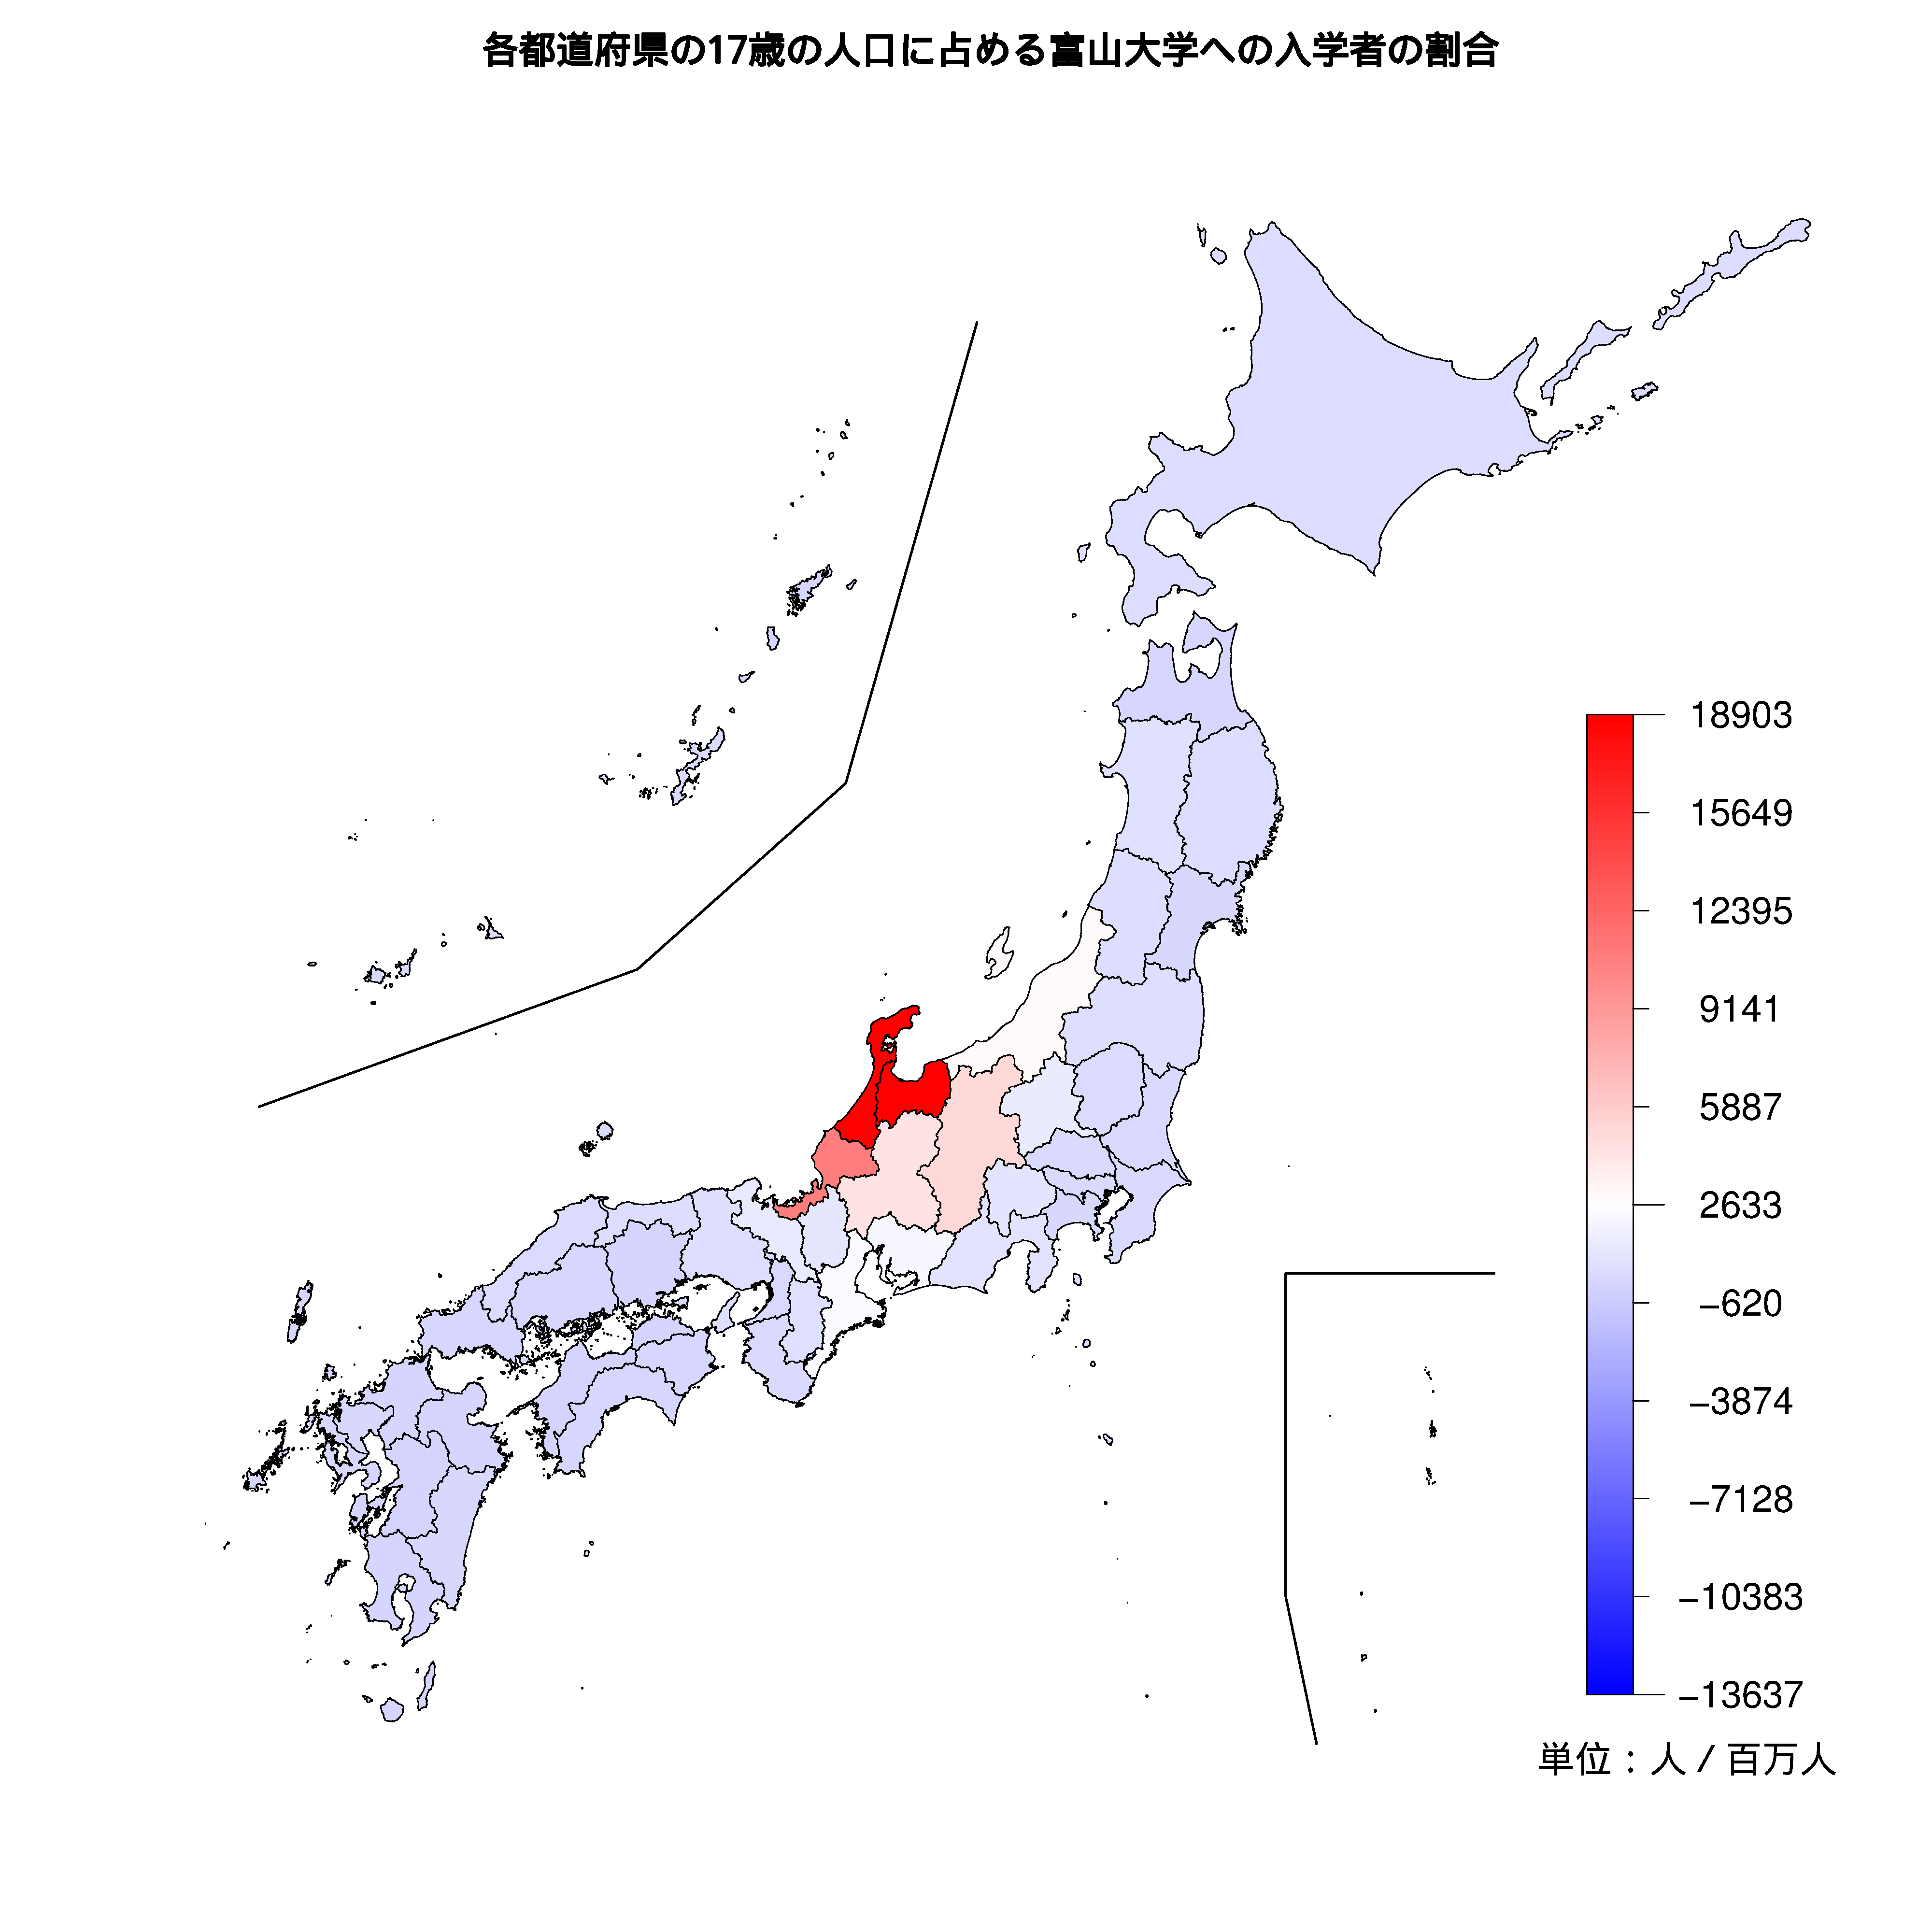 富山大学への入学者が多い都道府県の色分け地図